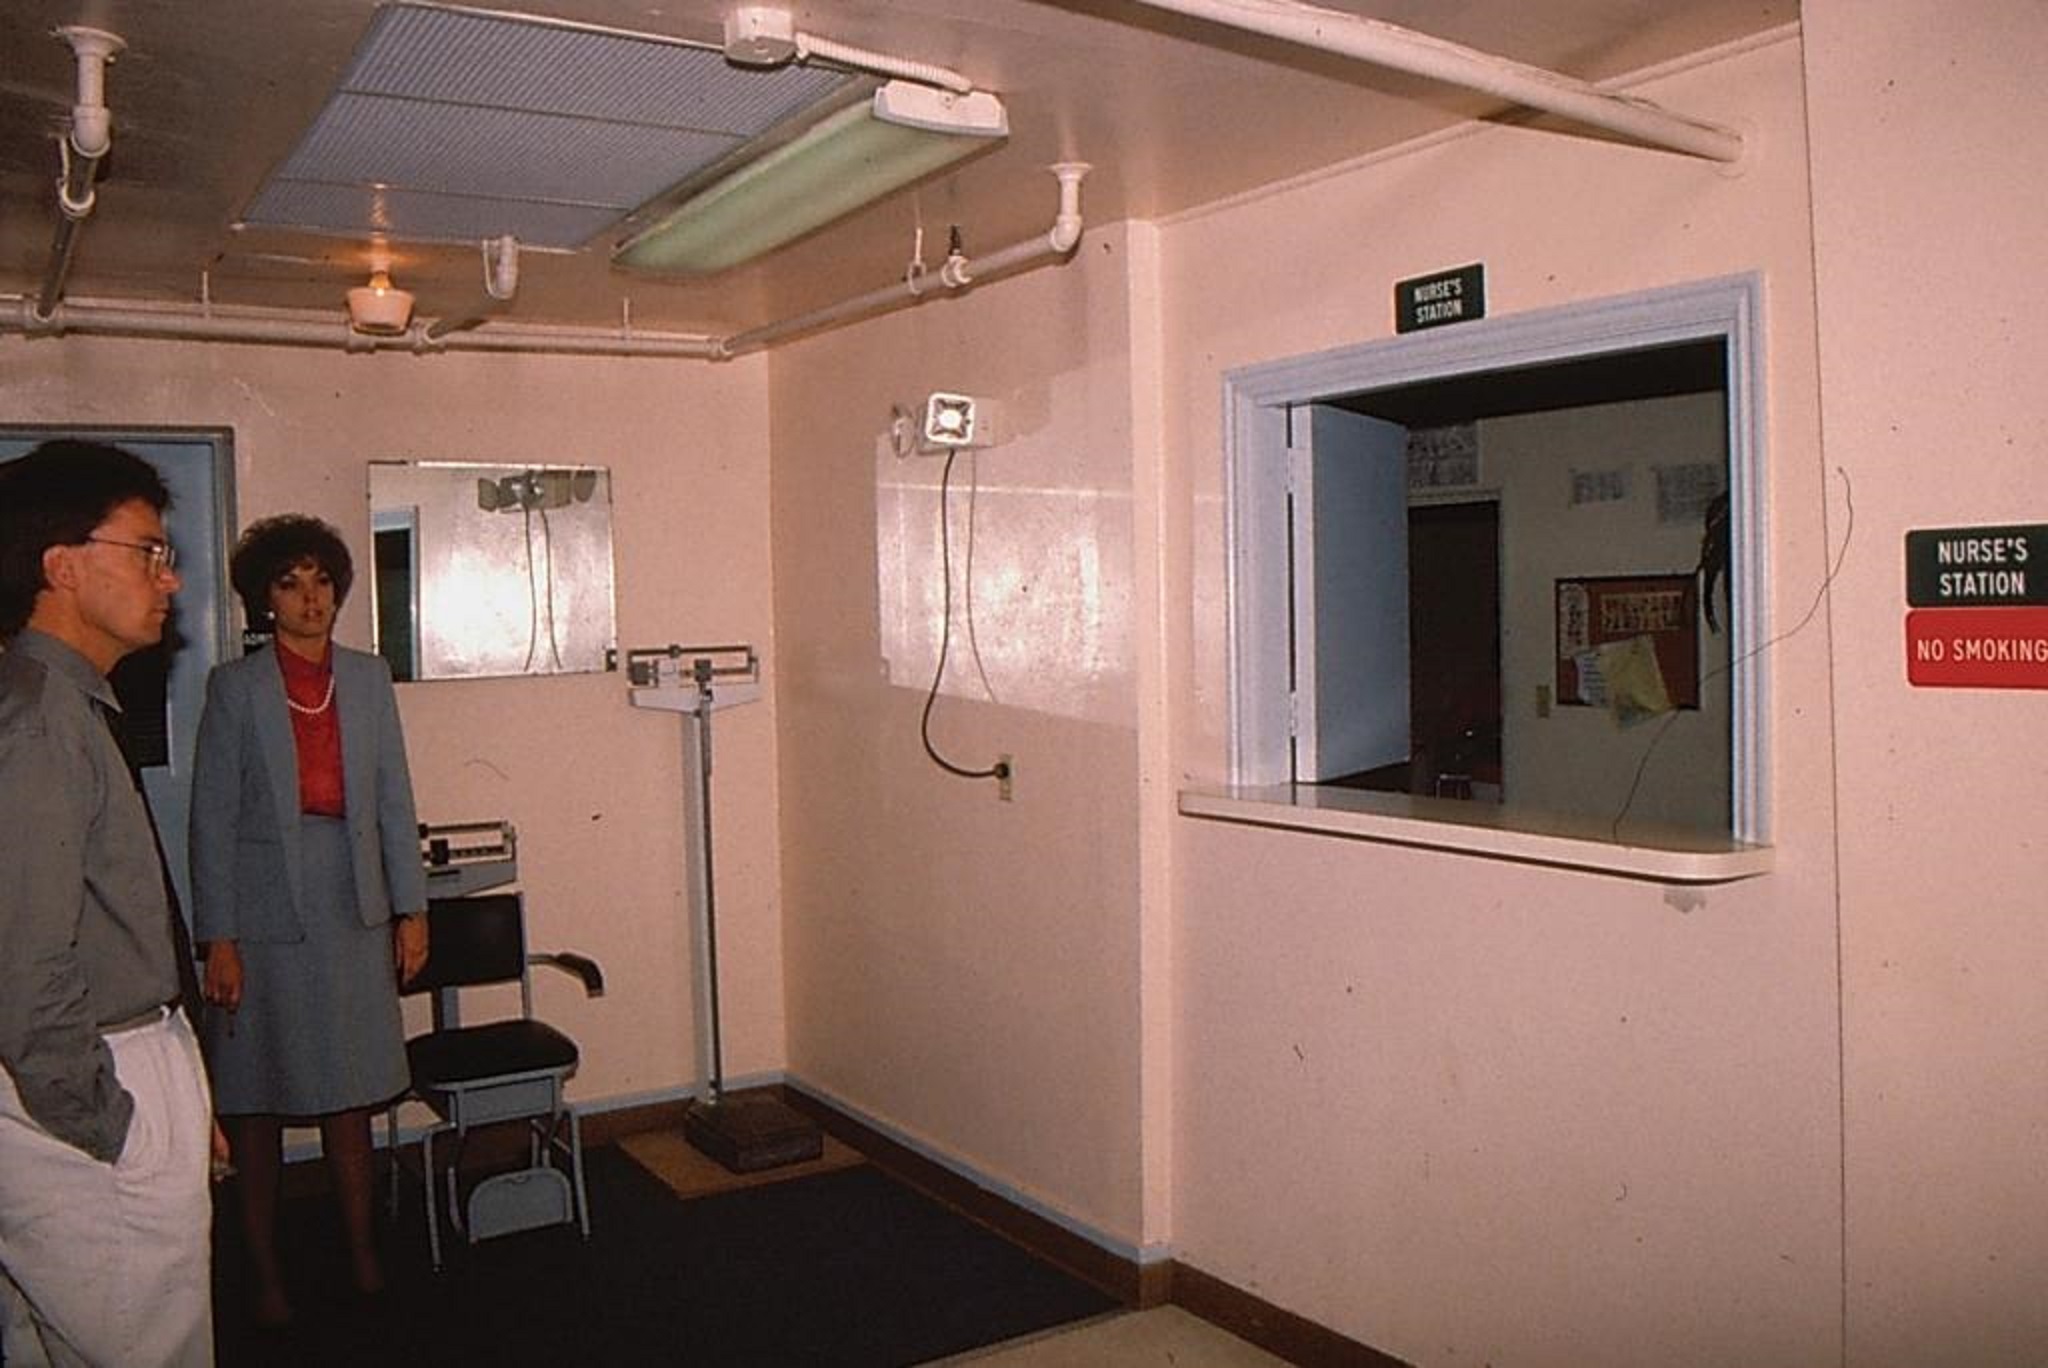 Nursing station at the McGregor Hospital